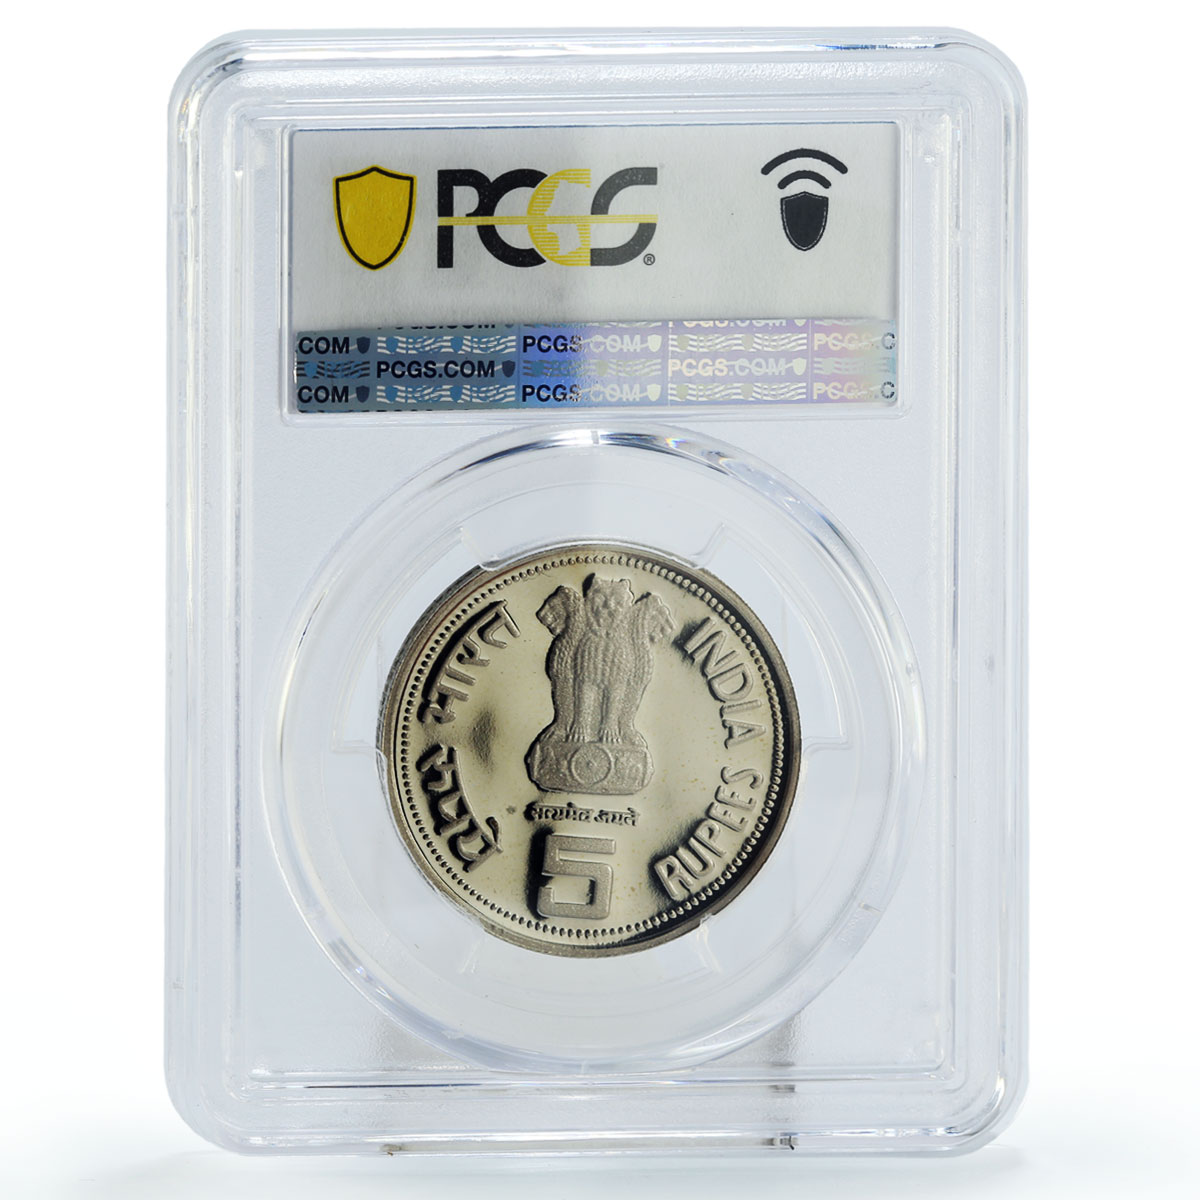 India 5 rupees Indira Gandhi Politics PR69 PCGS CuNi coin 1985